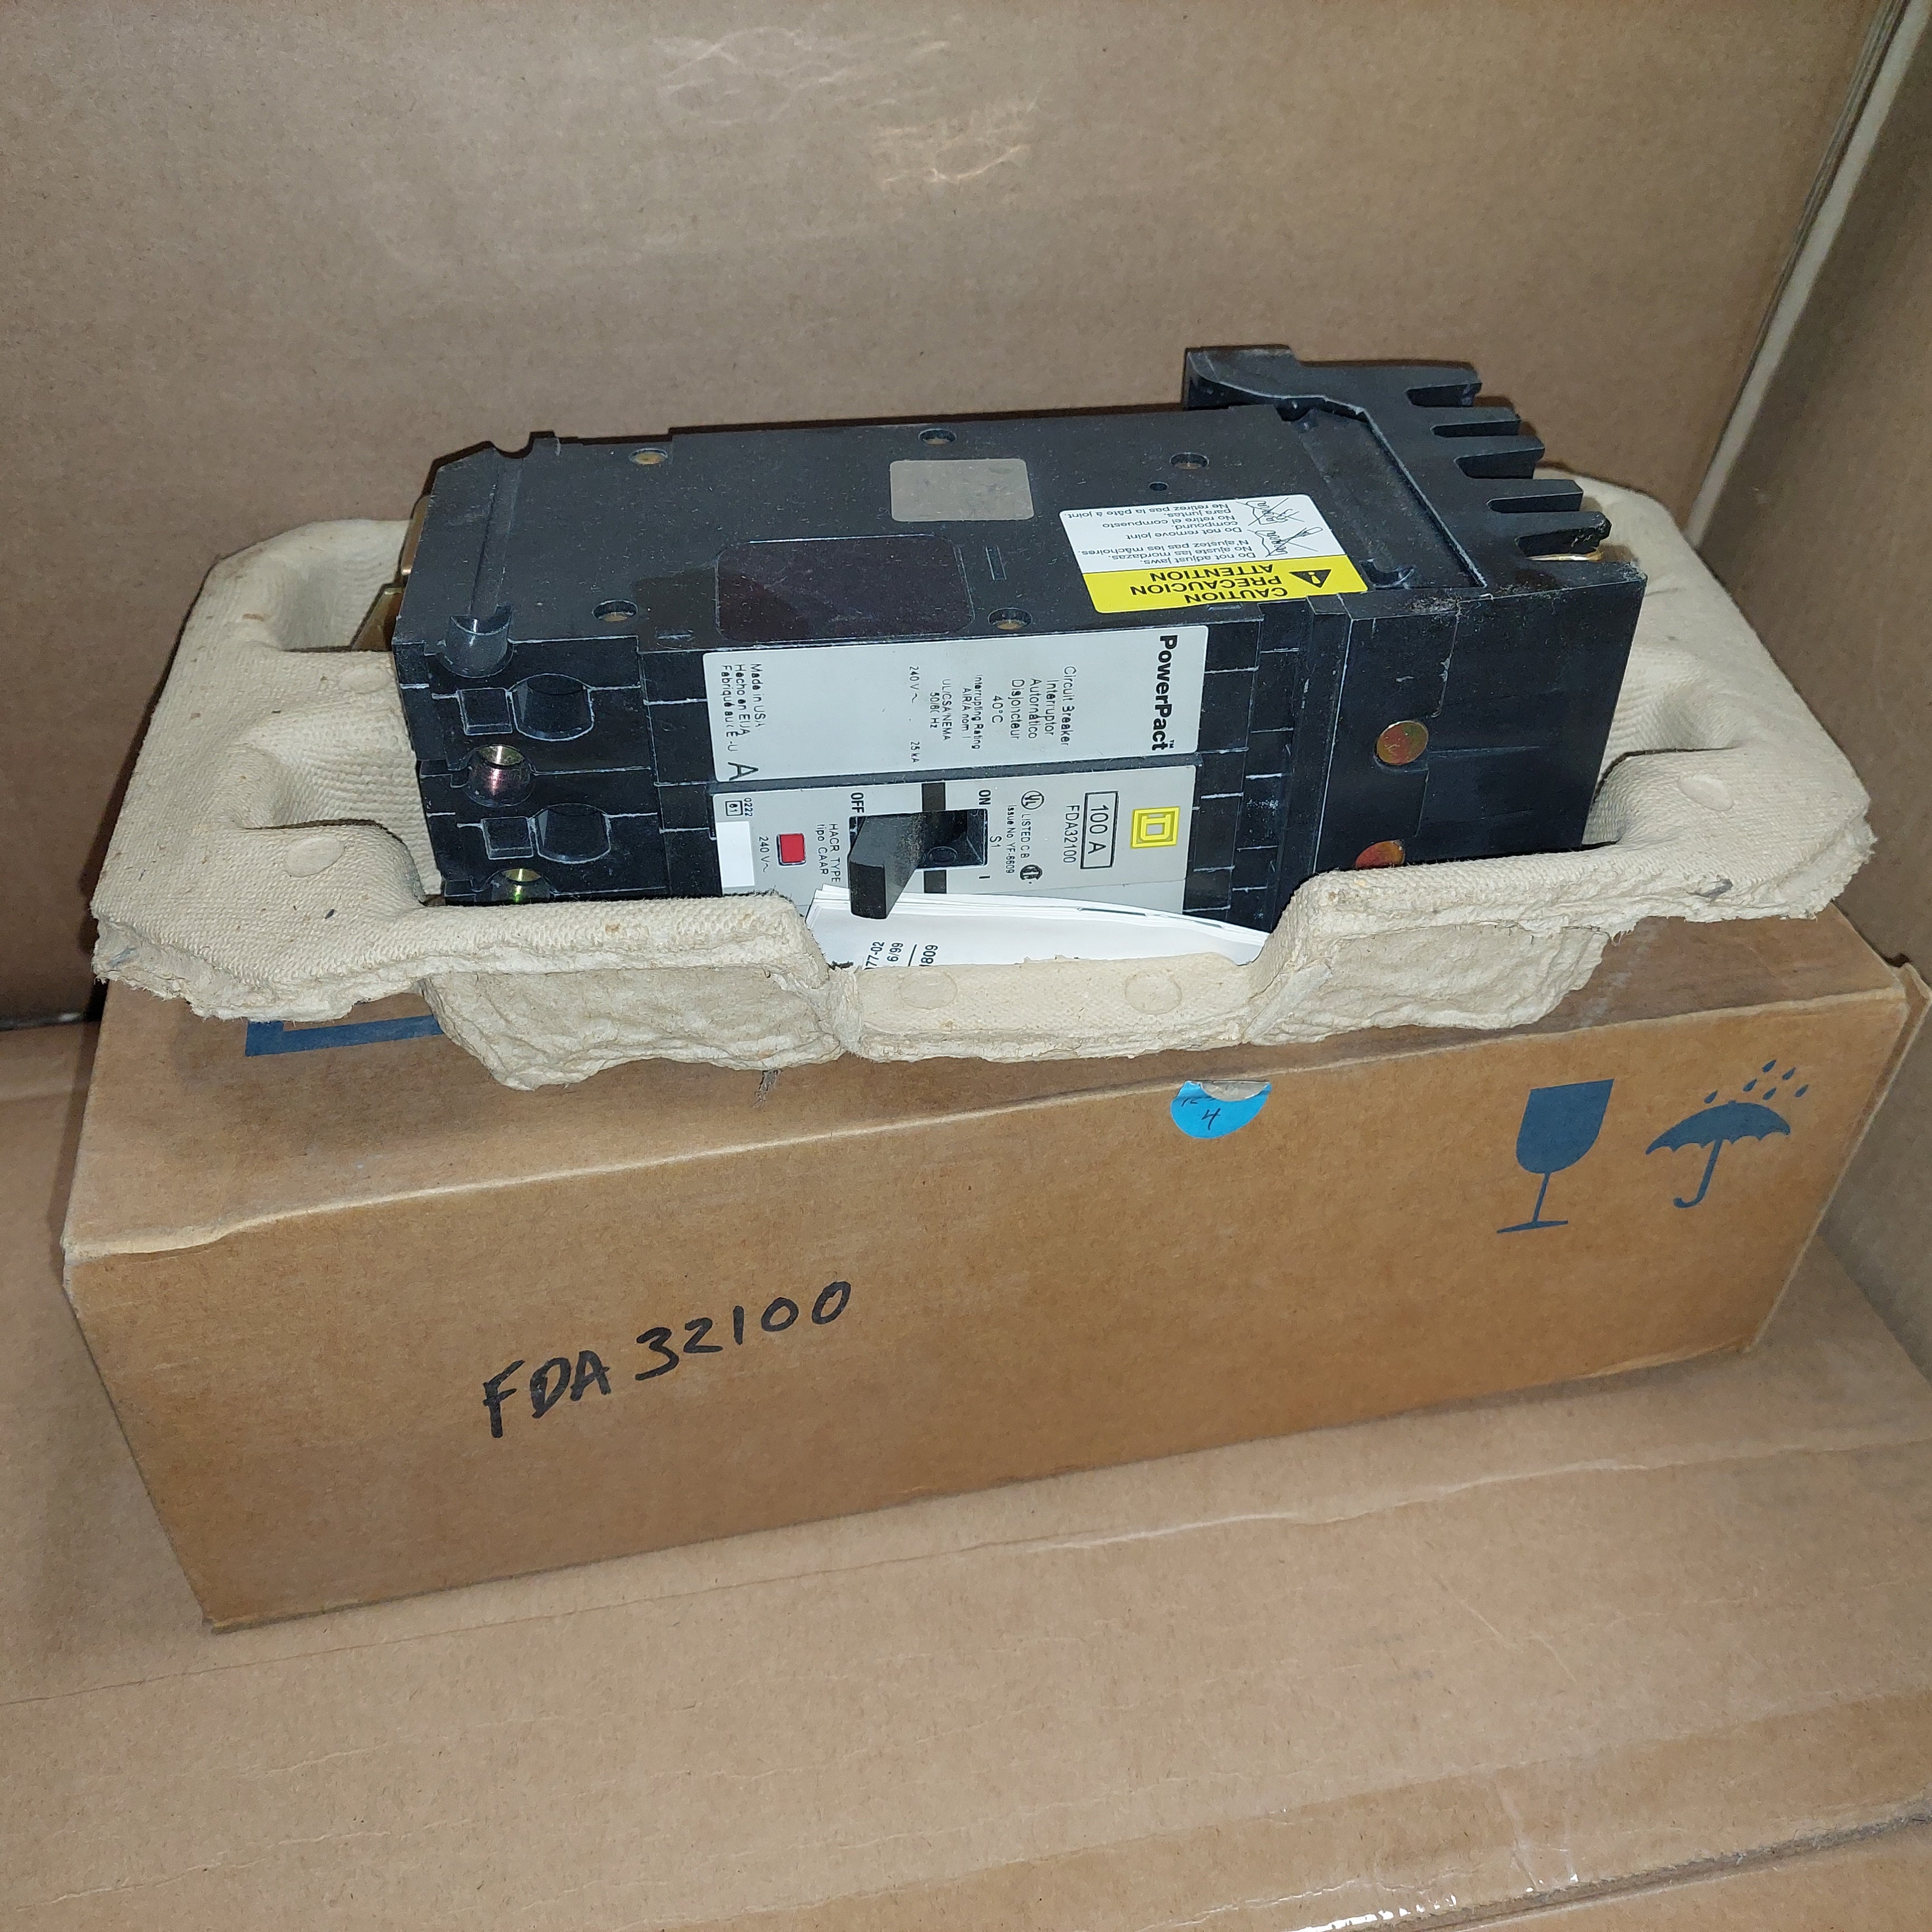 Square D FDA32100 100A 240V 3P Circuit Breaker New in Sealed Box